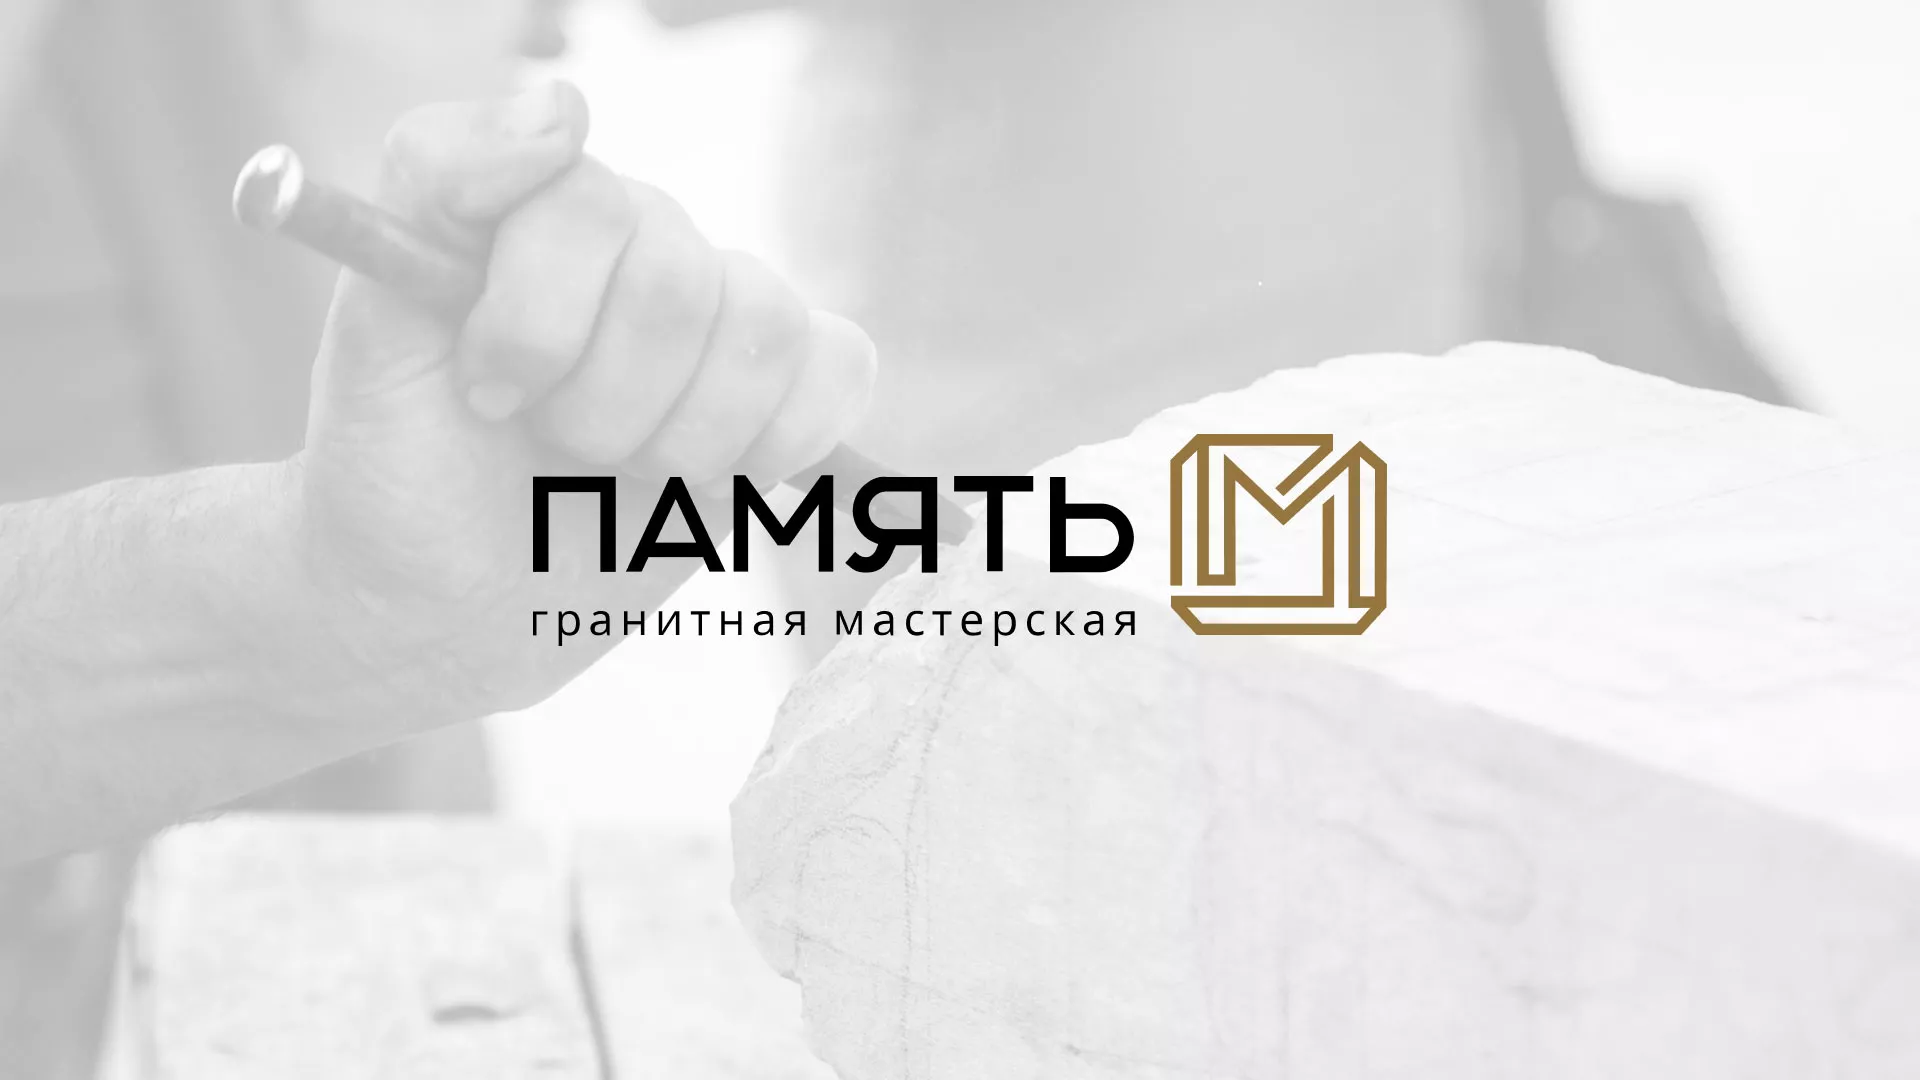 Разработка логотипа и сайта компании «Память-М» в Томске